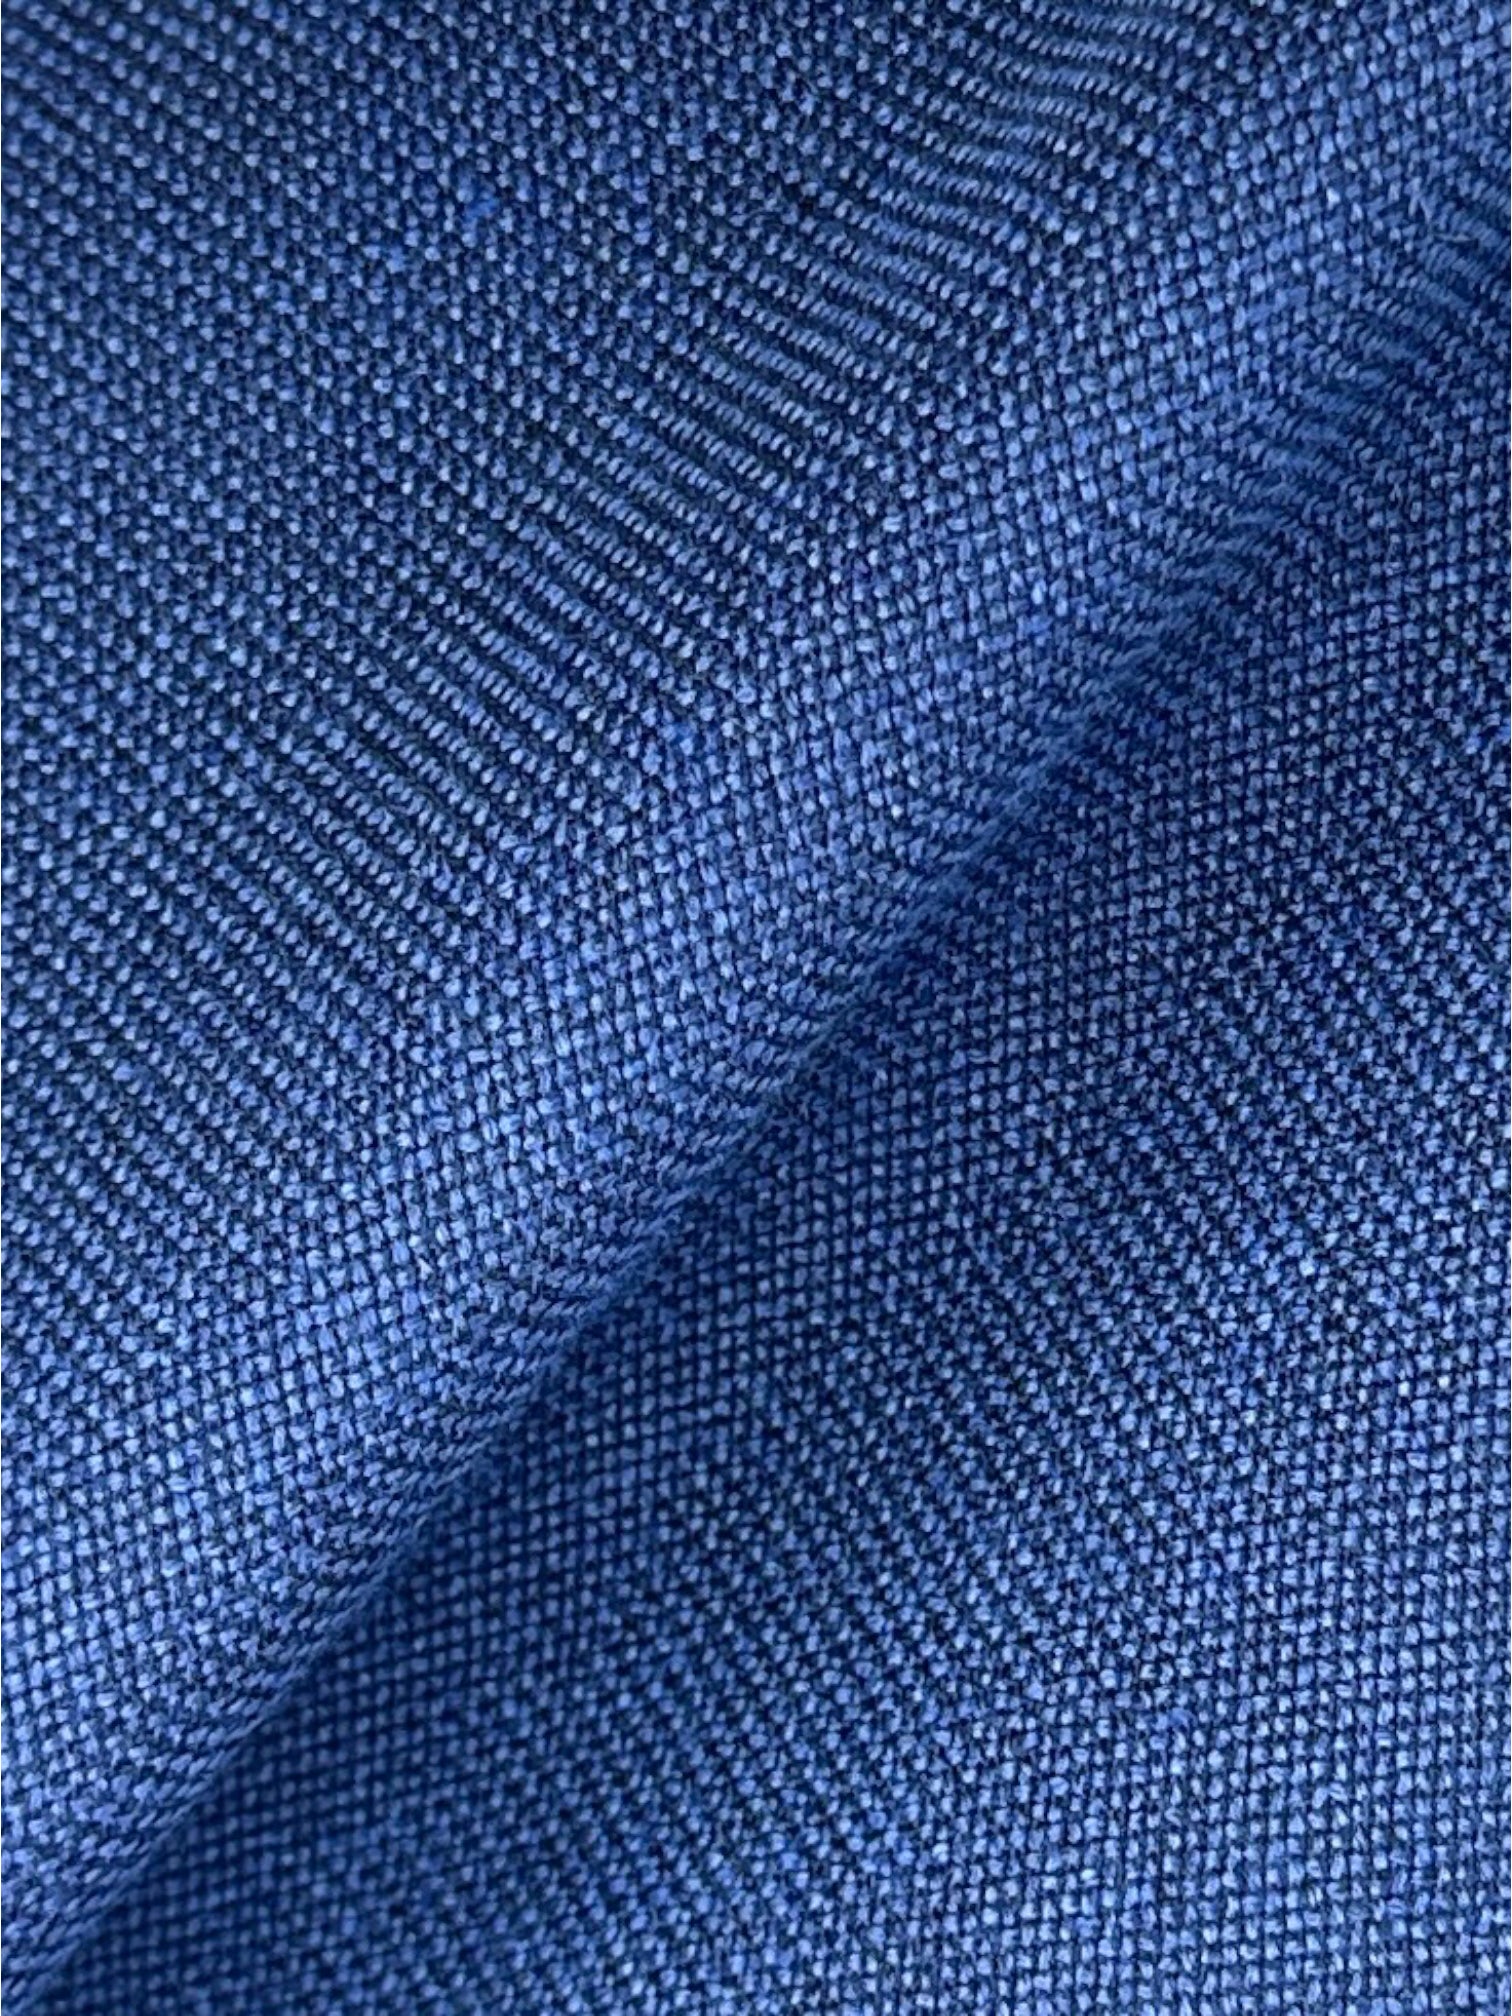 Cesare Attolini koningsblauw jasje van wol, zijde en linnen